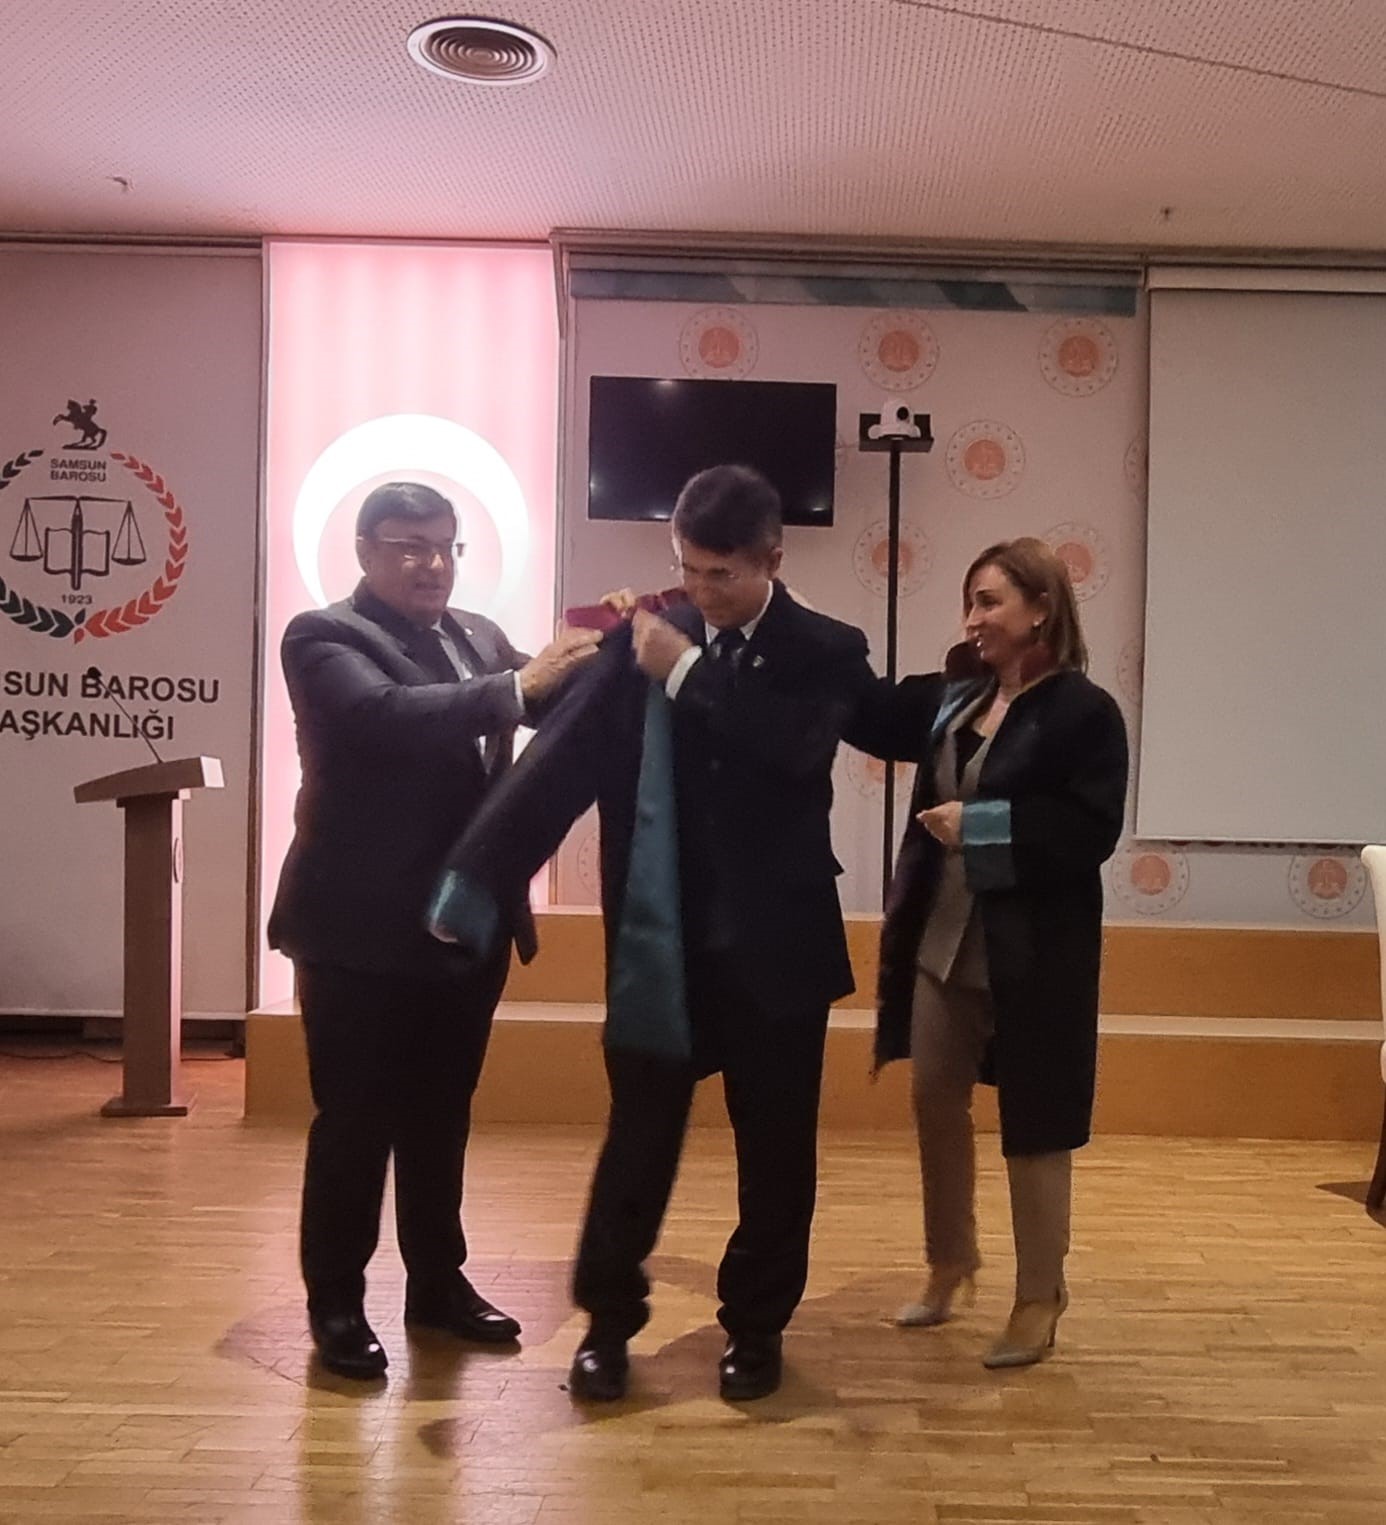 Tıp ve hukuk profesörü 64 yaşında avukatlık stajını tamamlayıp cübbe giydi
